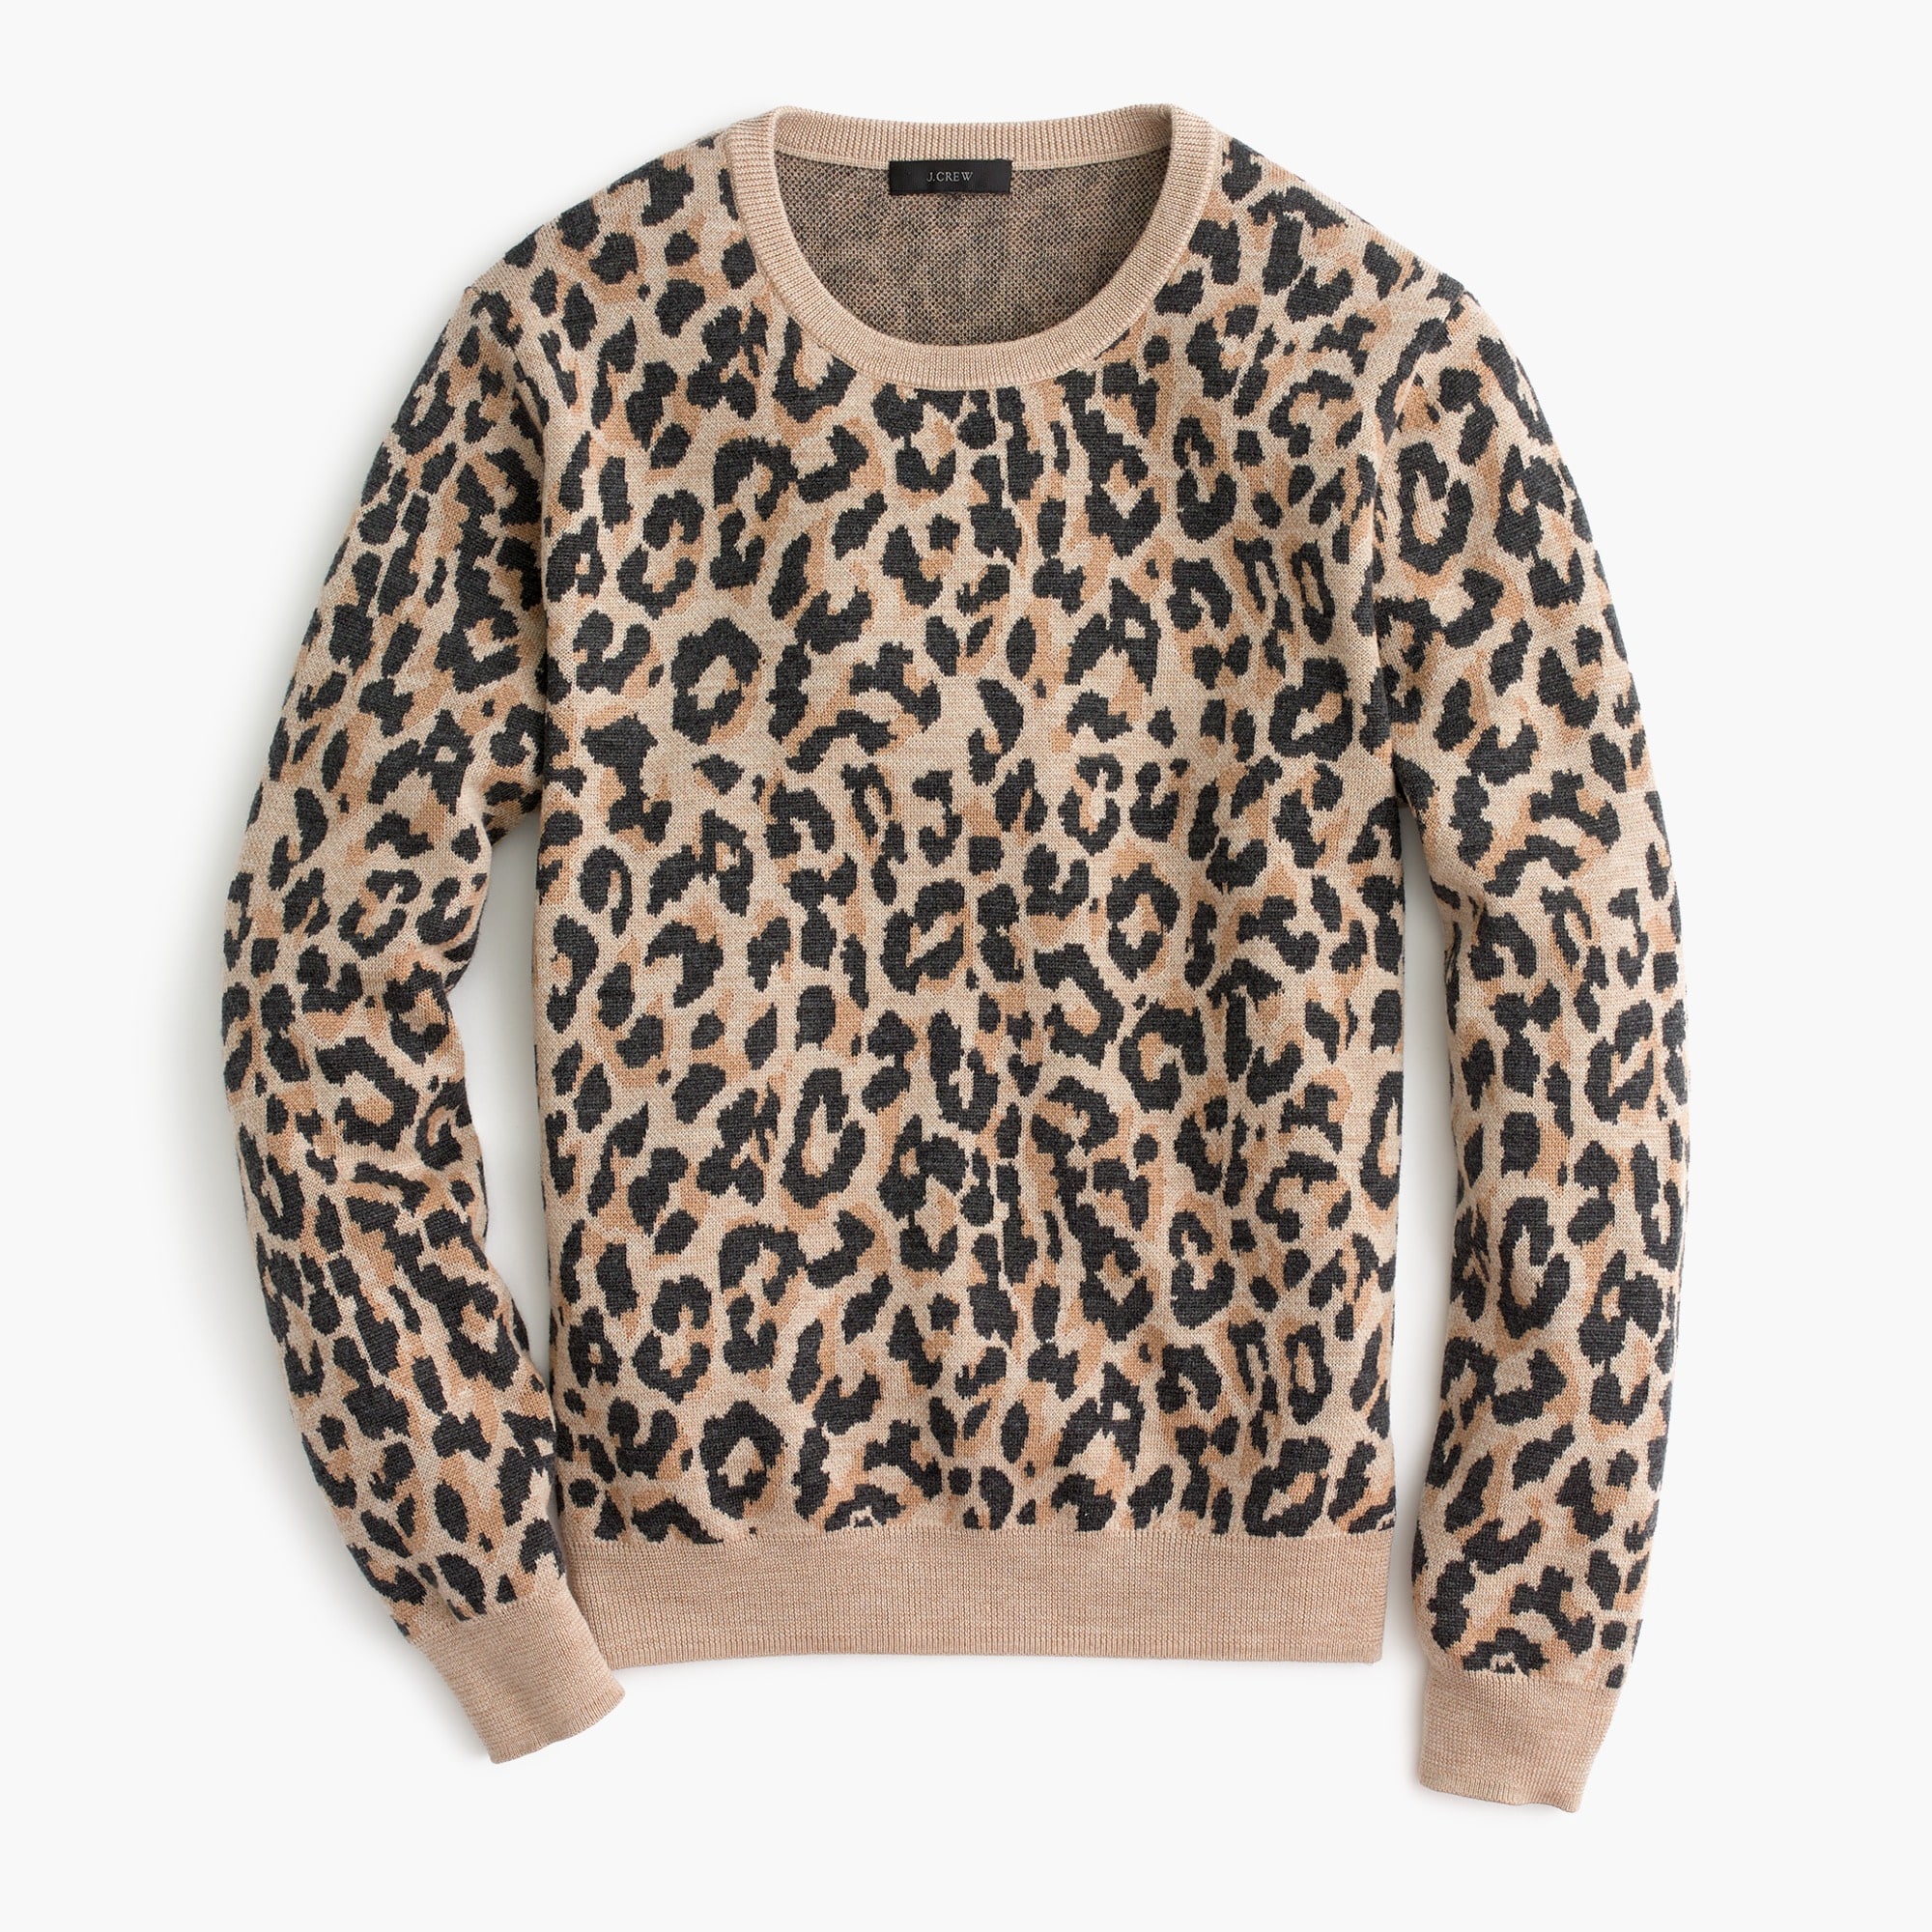 J.Crew: Merino Wool Crewneck Sweatshirt In Leopard For Women